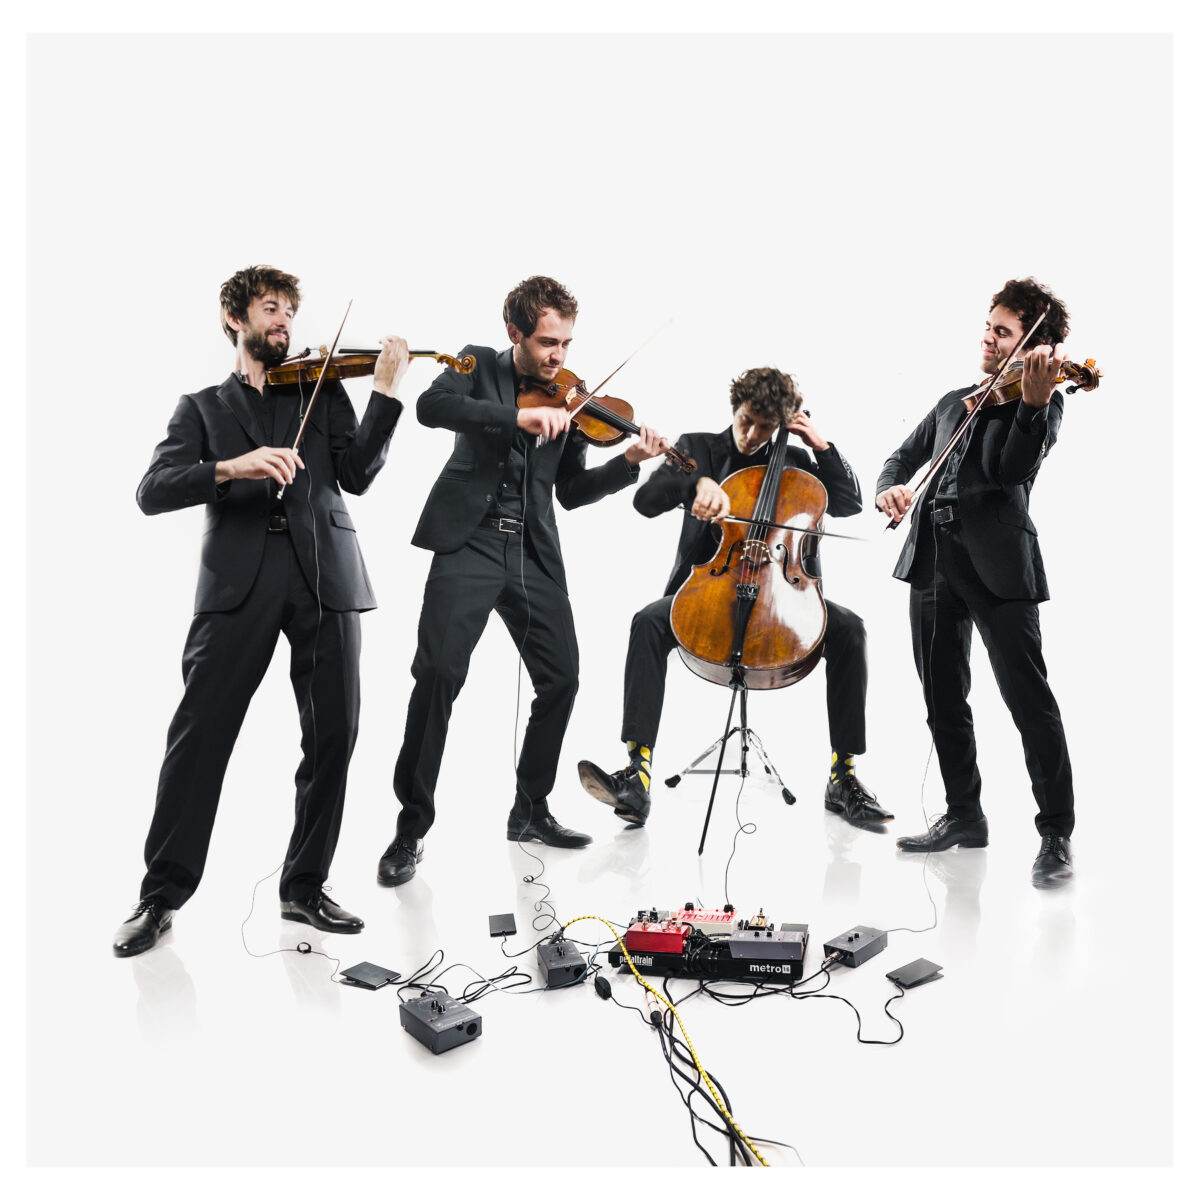 Teatro Ristori, riprende la rassegna concertistica col Vision String Quartet